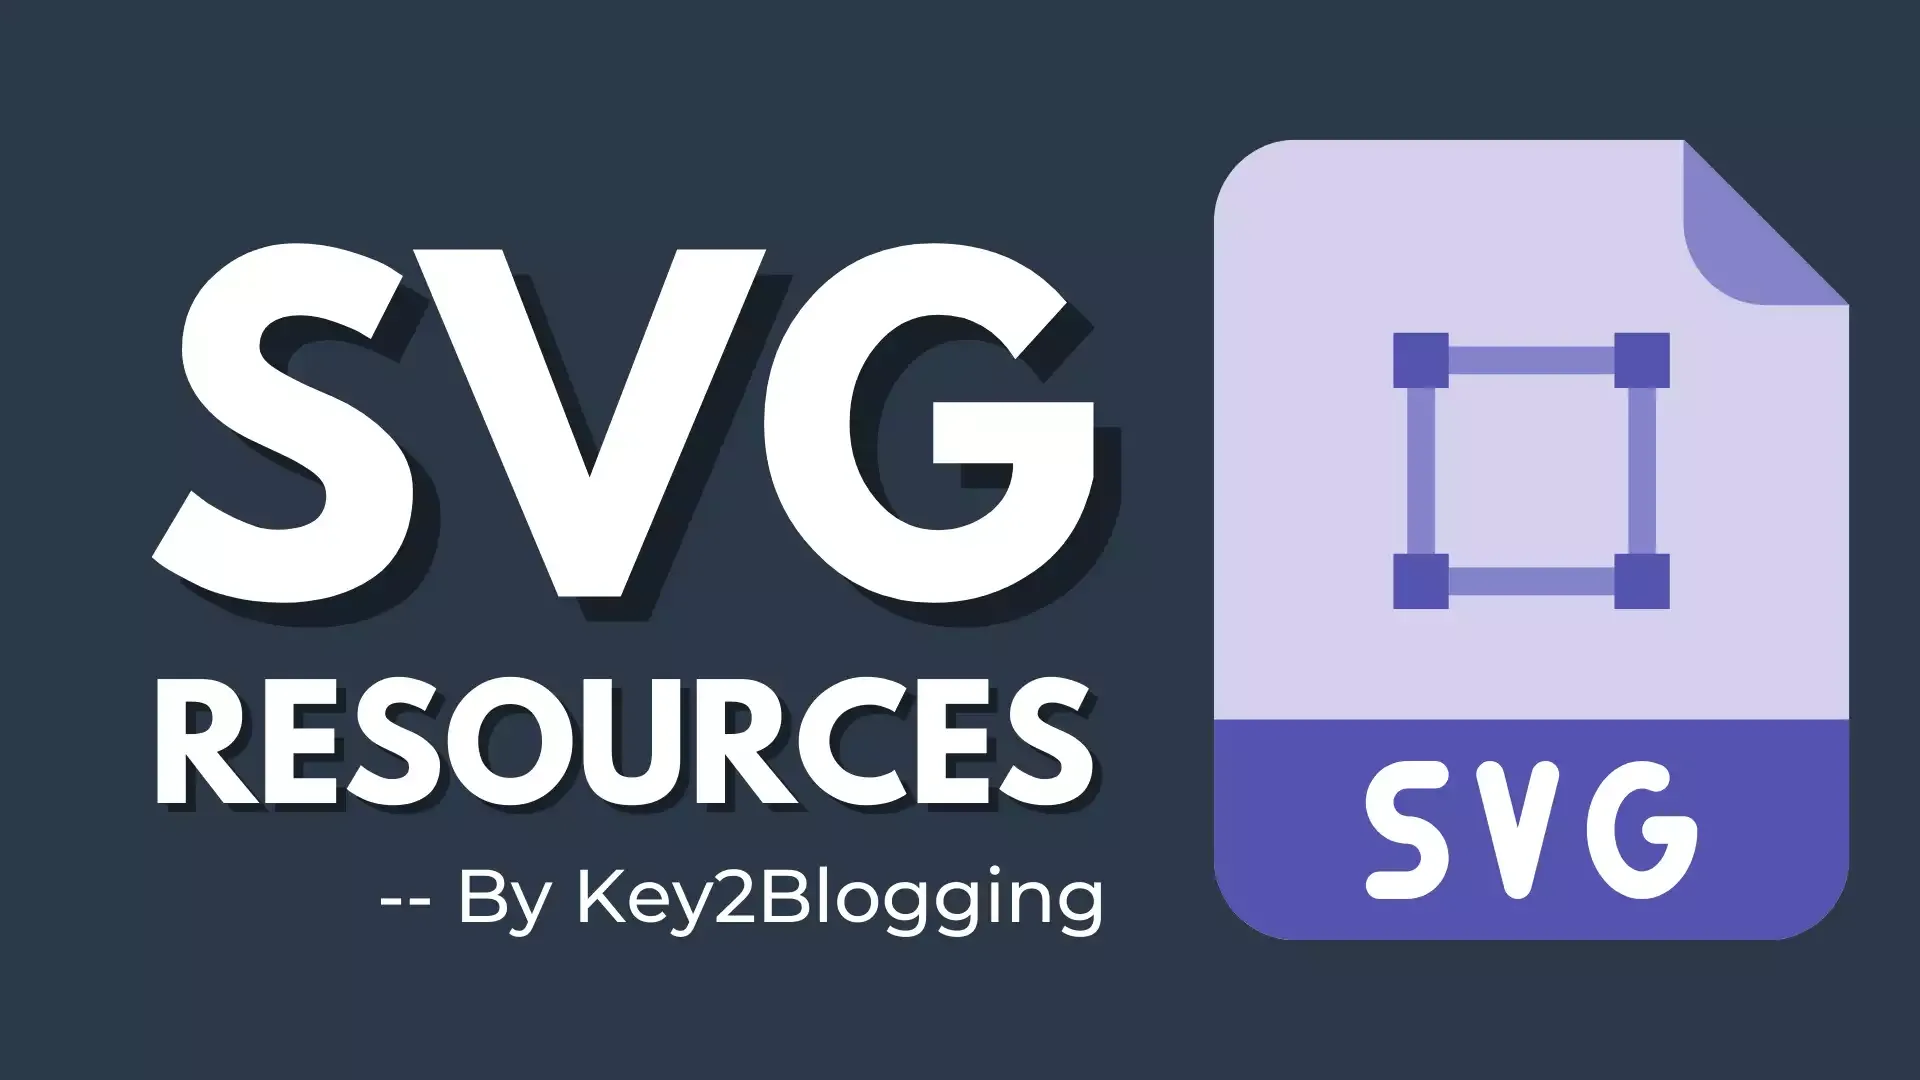 SVG resources